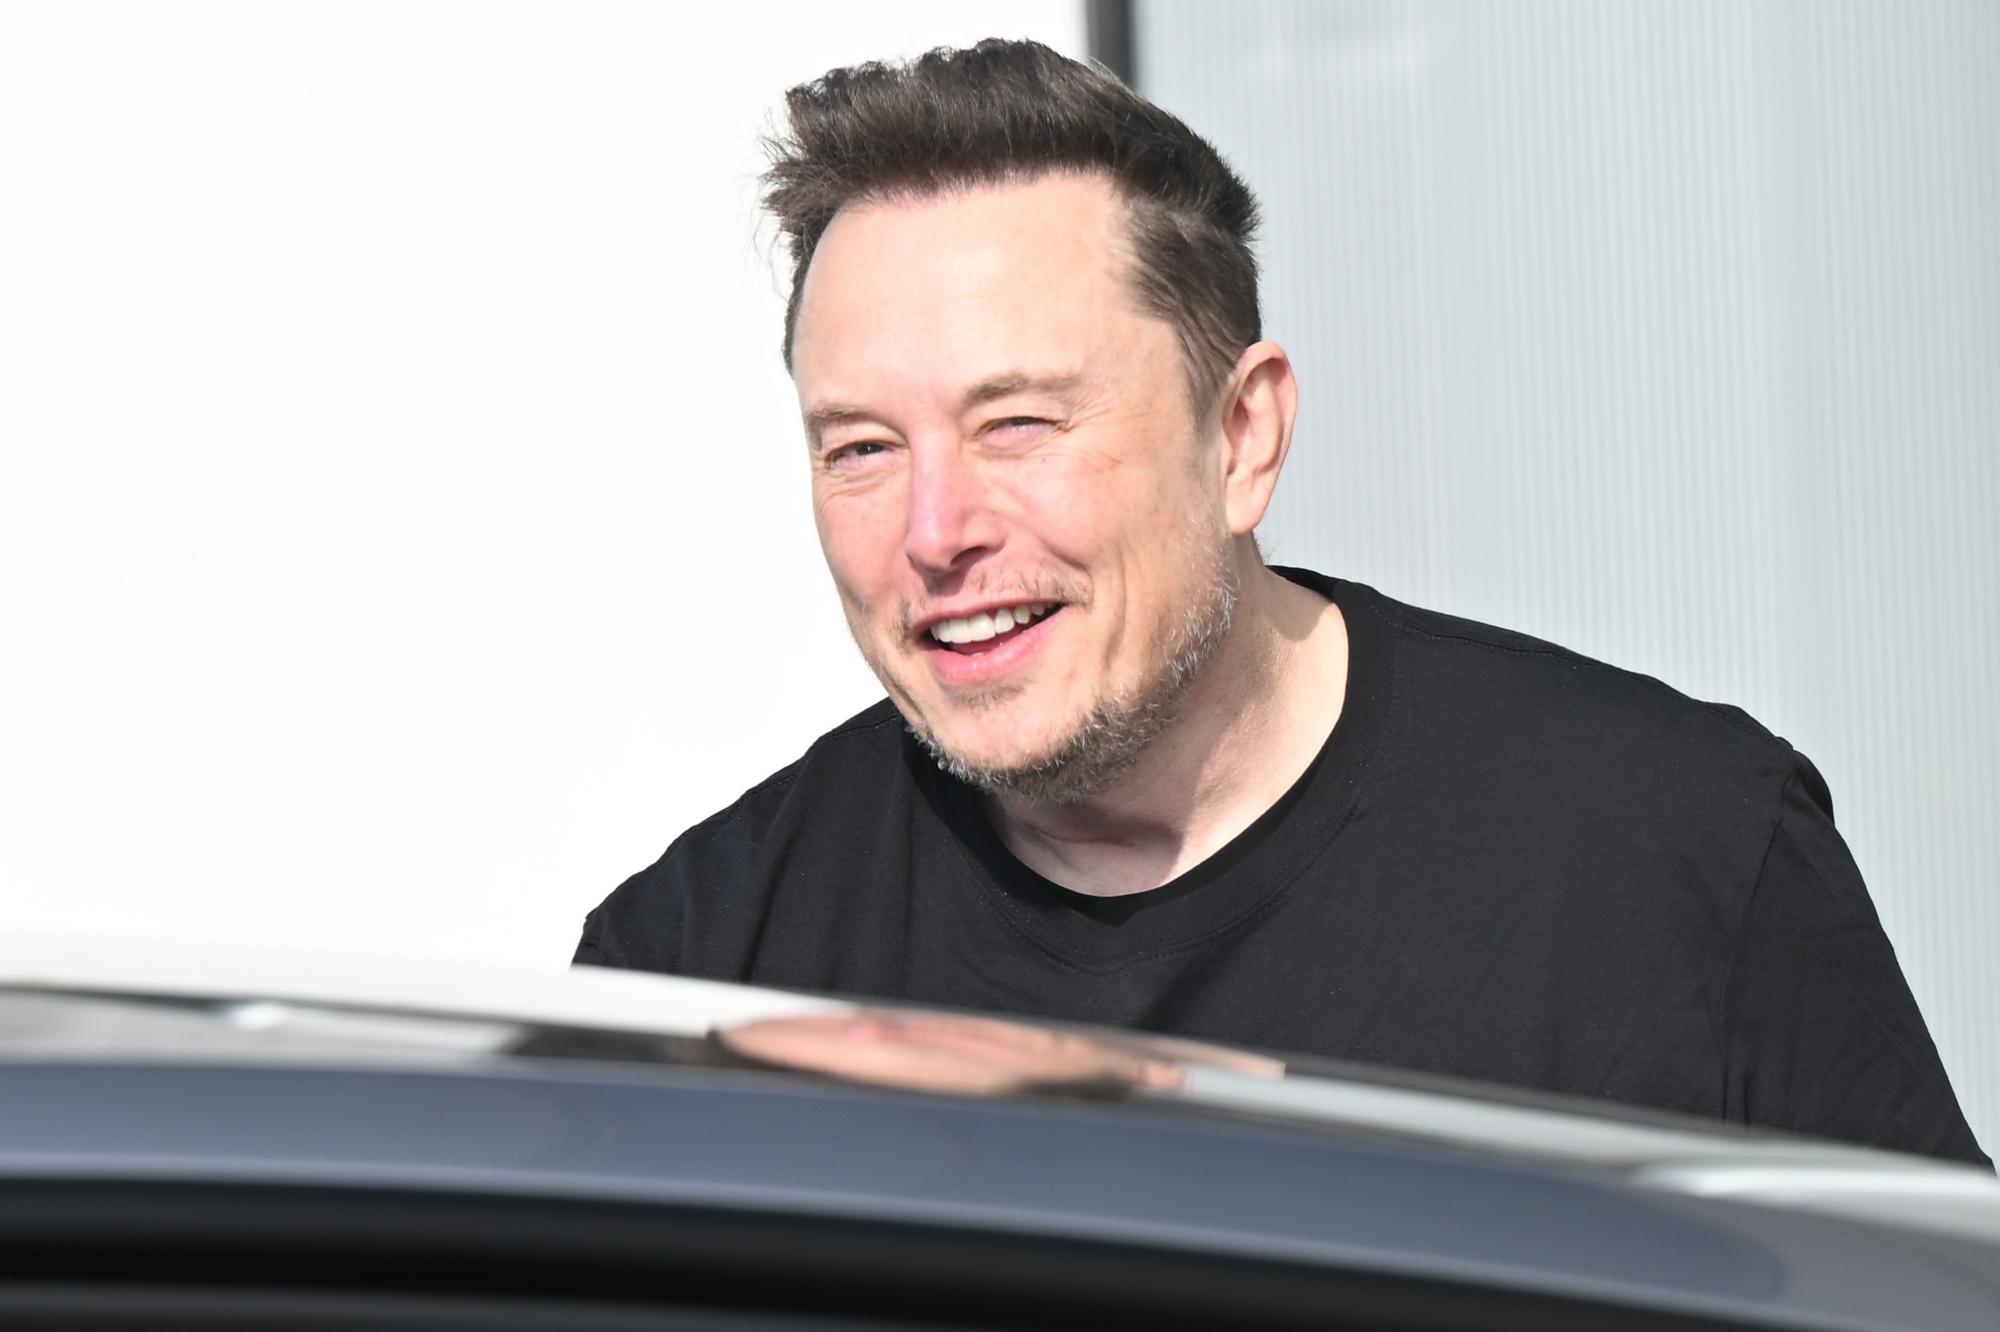 Podľa konšpirátorov má v skaze prsty aj Elon Musk.